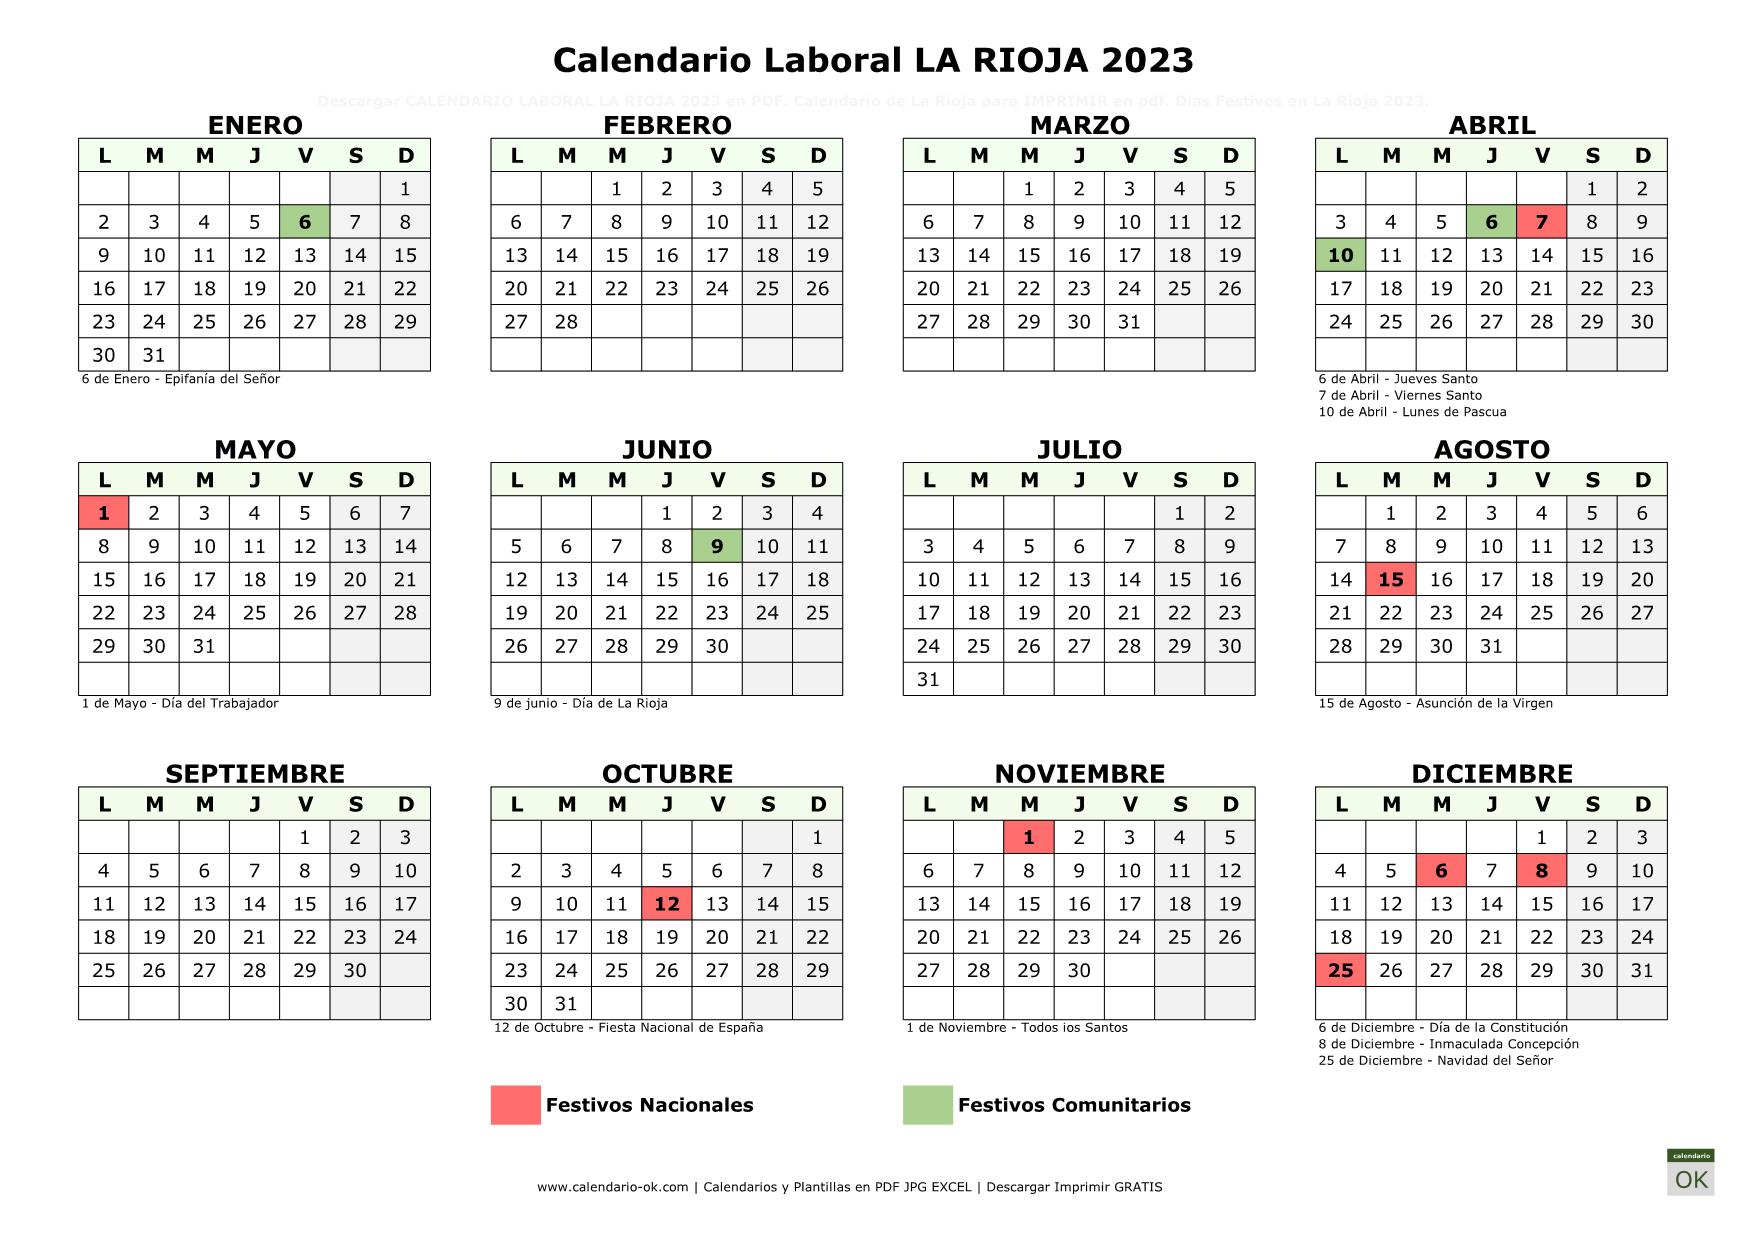 Calendario Laboral LA RIOJA 2023 horizontal